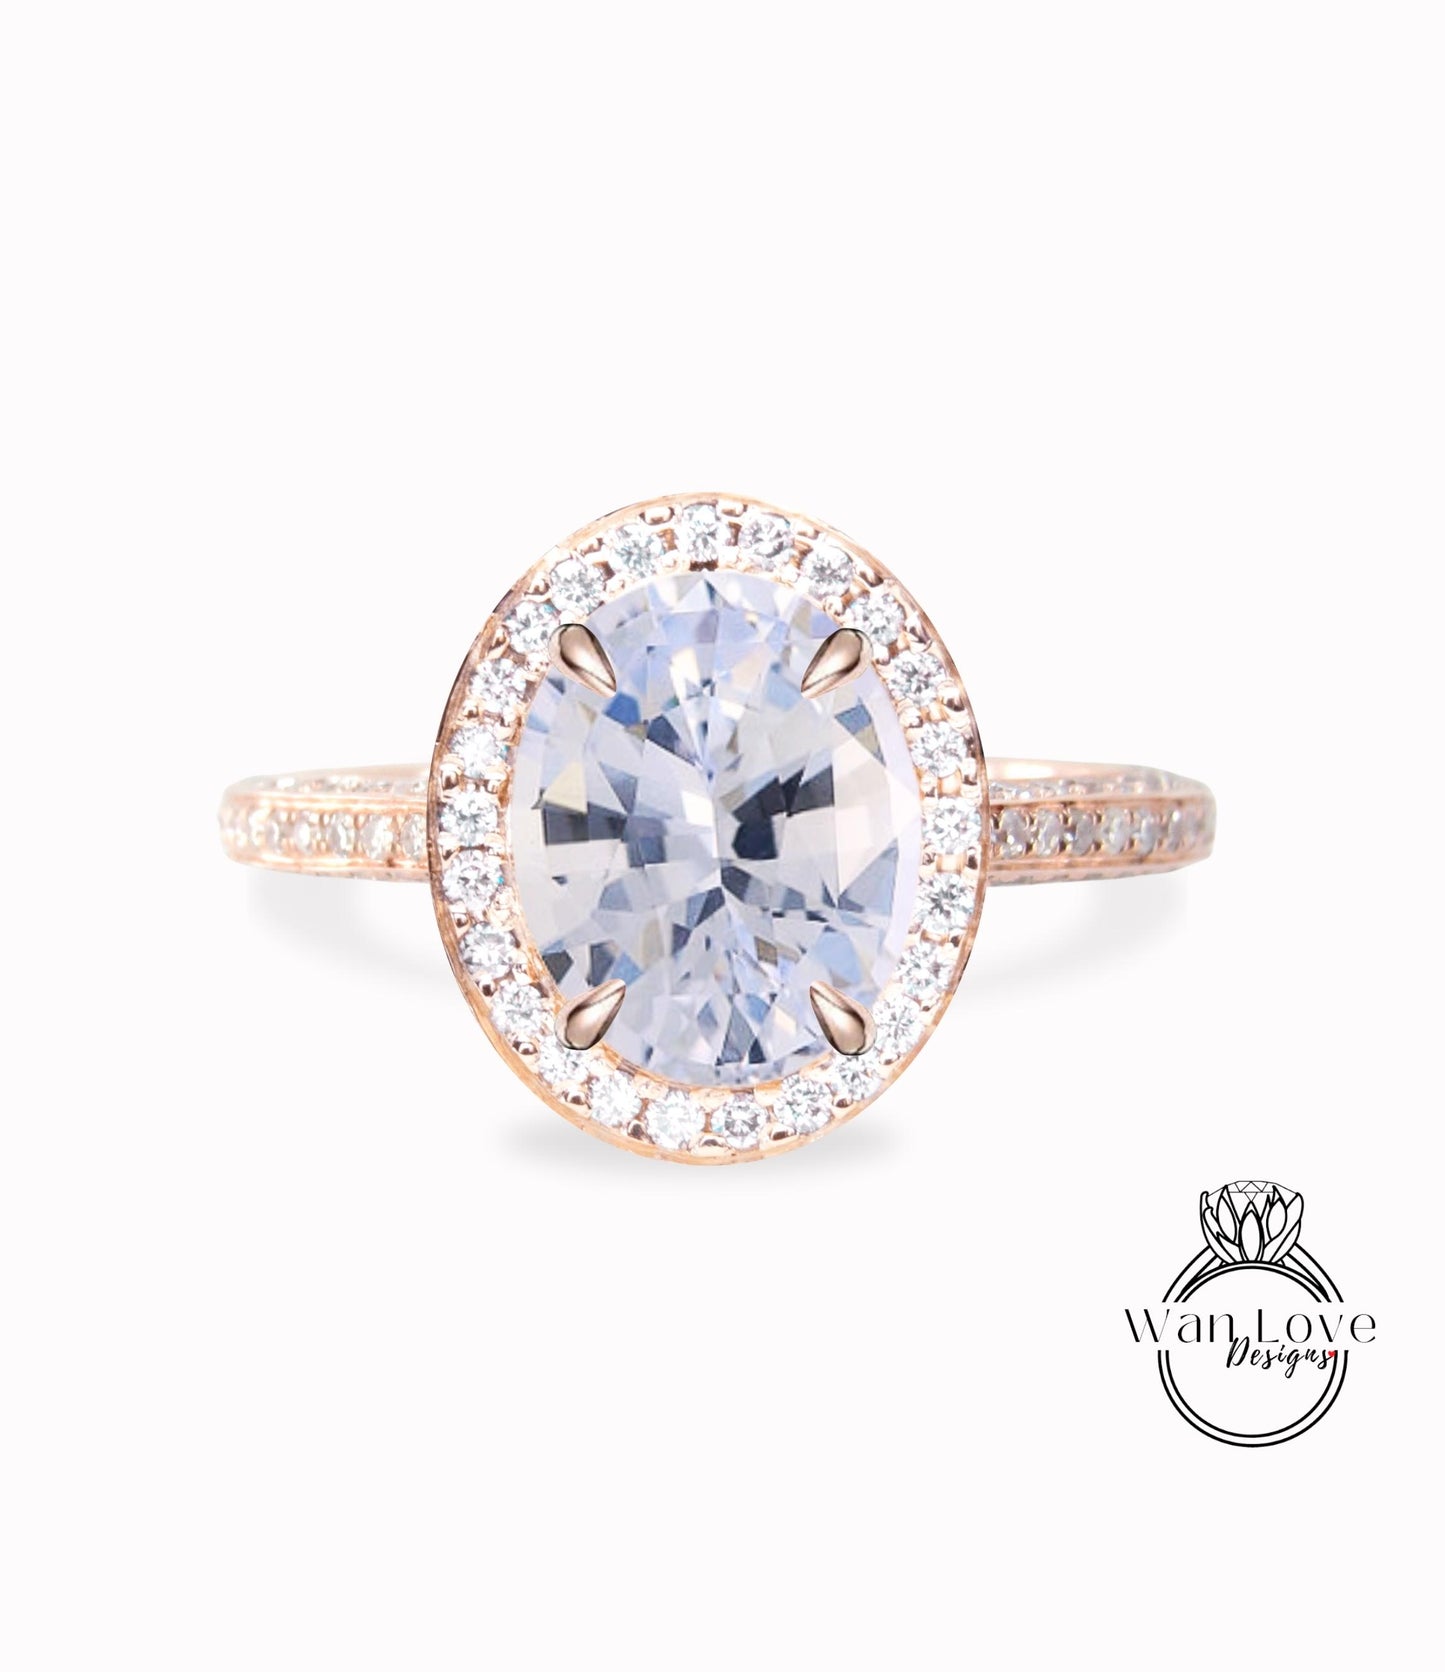 Anello di fidanzamento con zaffiro bianco a taglio ovale, anello di diamanti vintage con alone laterale, anello moissanite, anello in oro rosa, anello art deco, anello anniversario promessa.